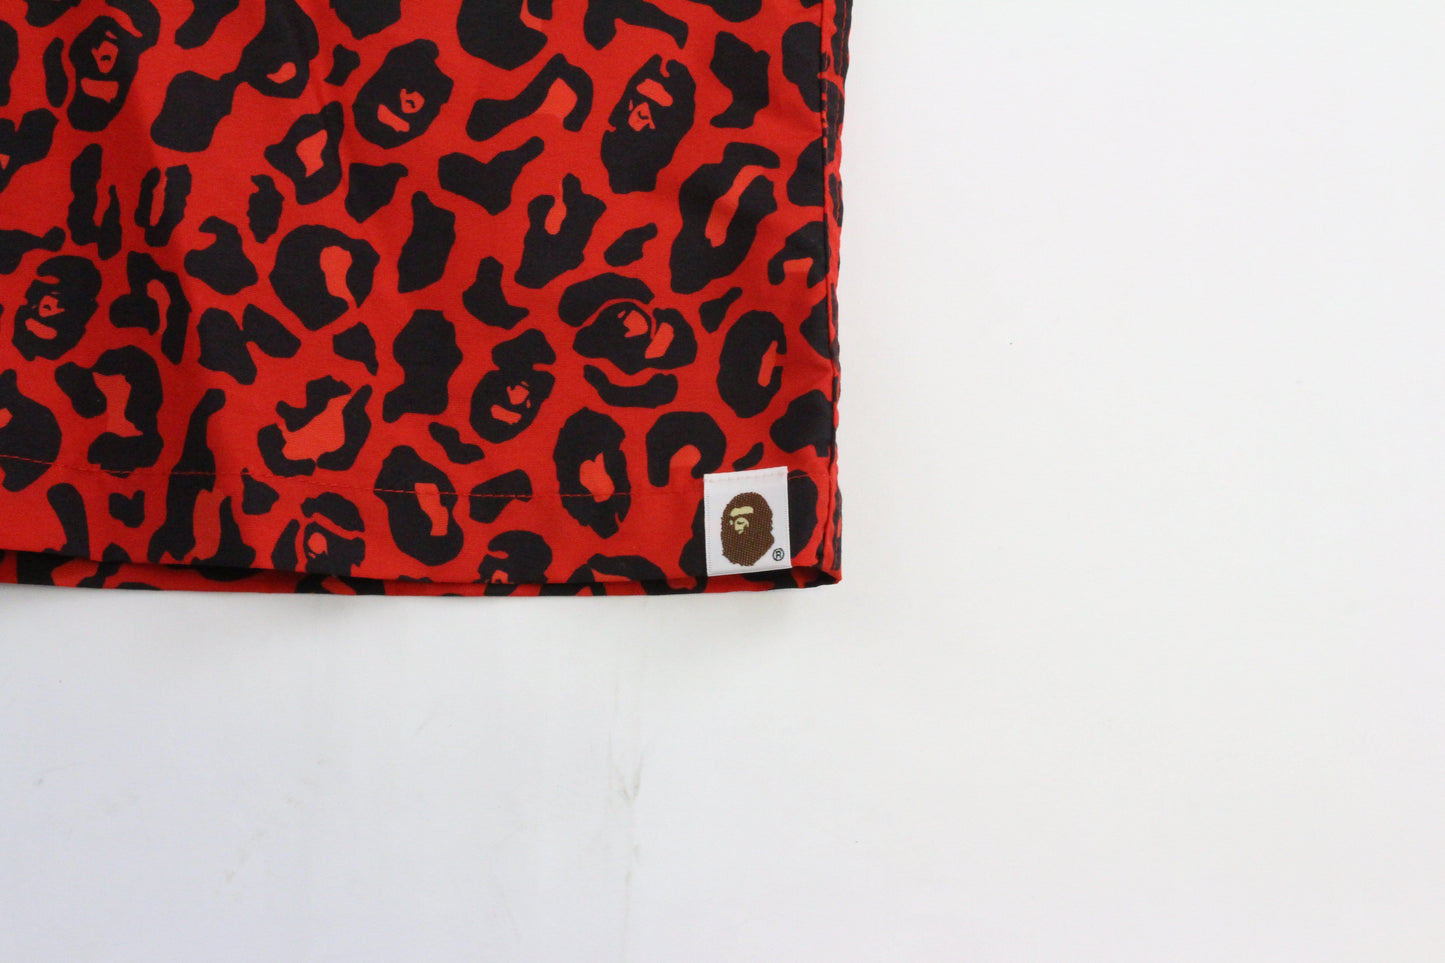 Bape Leopard Print Shorts Red - SaruGeneral